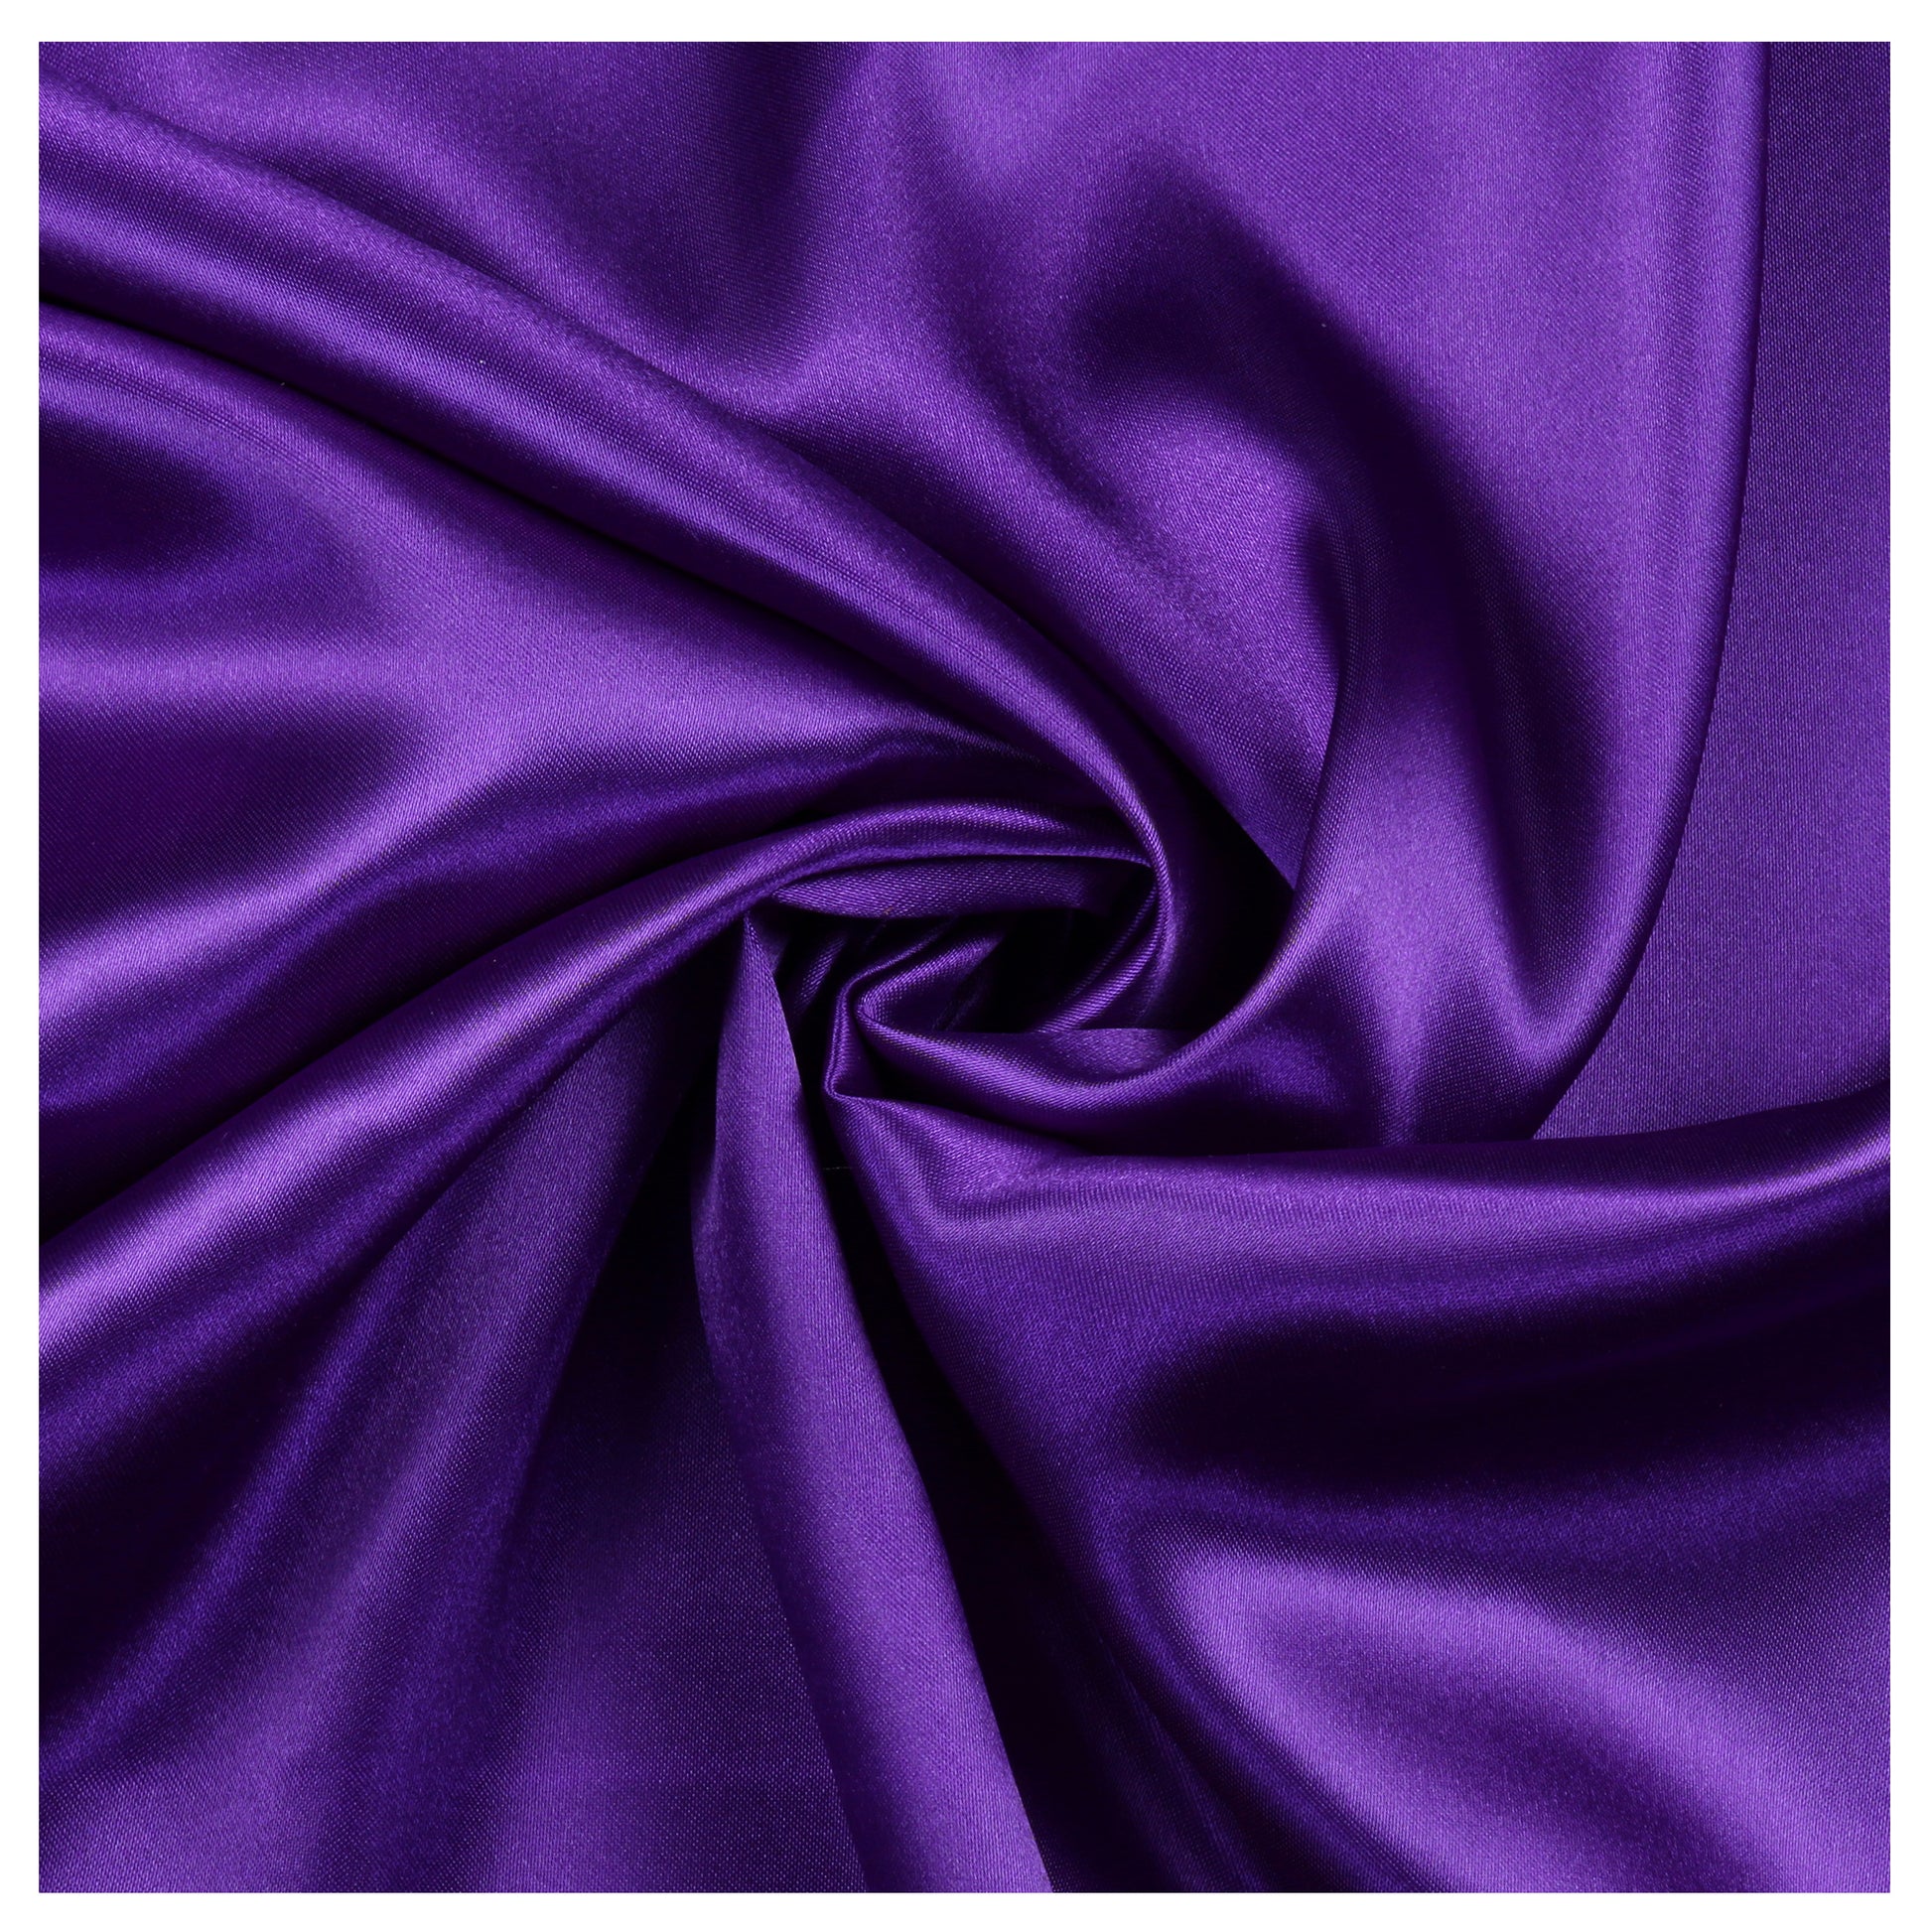 Cadbury Purple,9647dda6-bac2-4c31-8983-6cf865a9db85